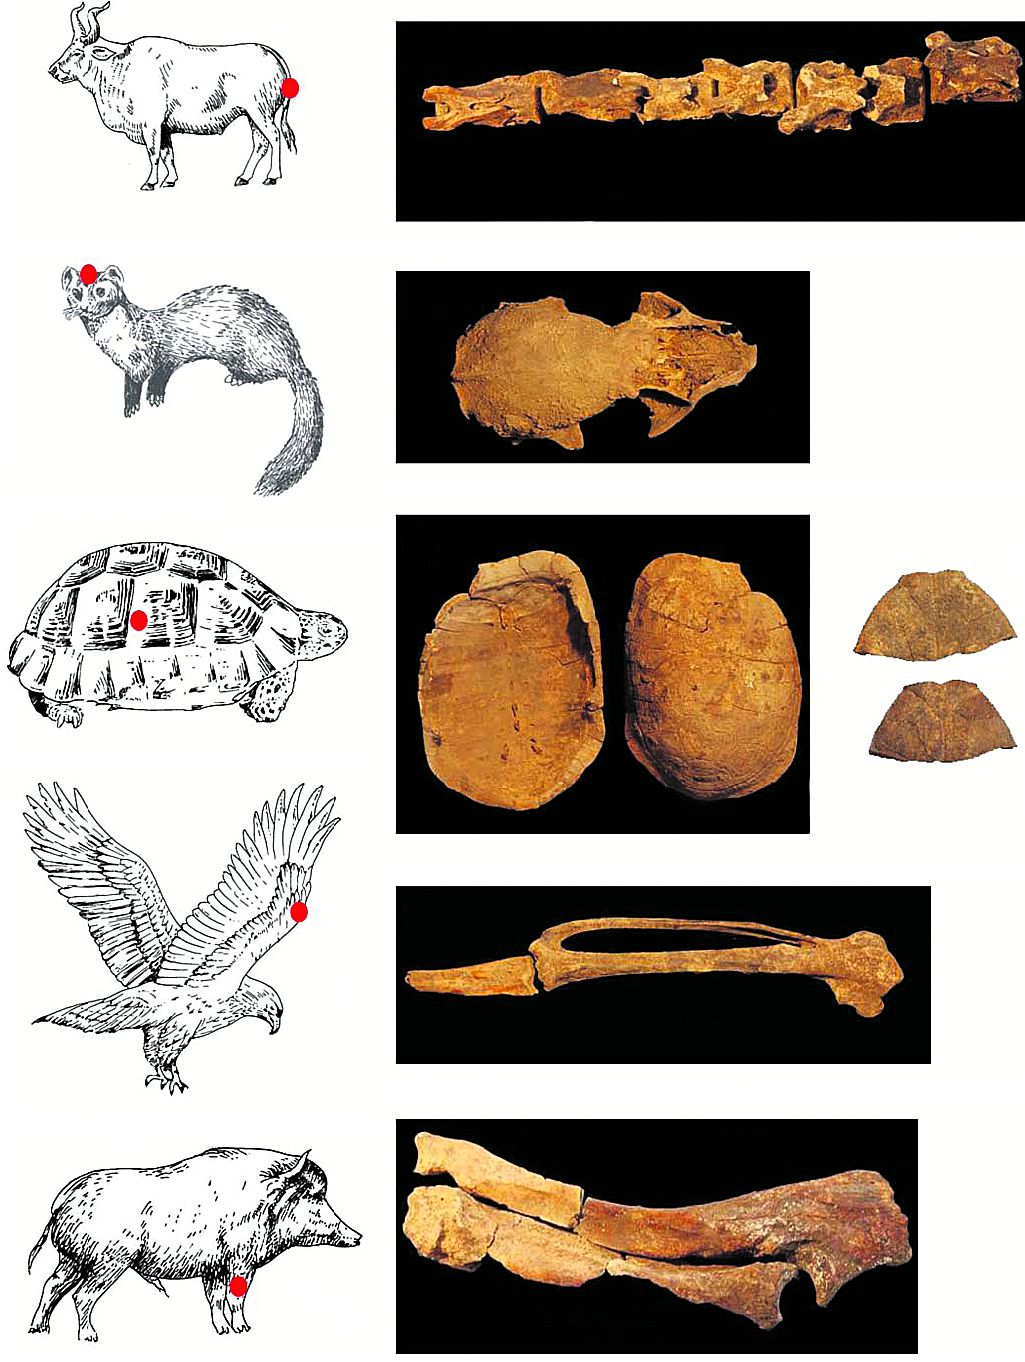 Dierlijke resten in het sjamaangraf: staart-beentjes van een oeros, steenmarterschedel, delen van schildpad-schilden marterschedels, vingerbotje van een adelaar, voorpoot van een everzwijn. Illustraties PNAS